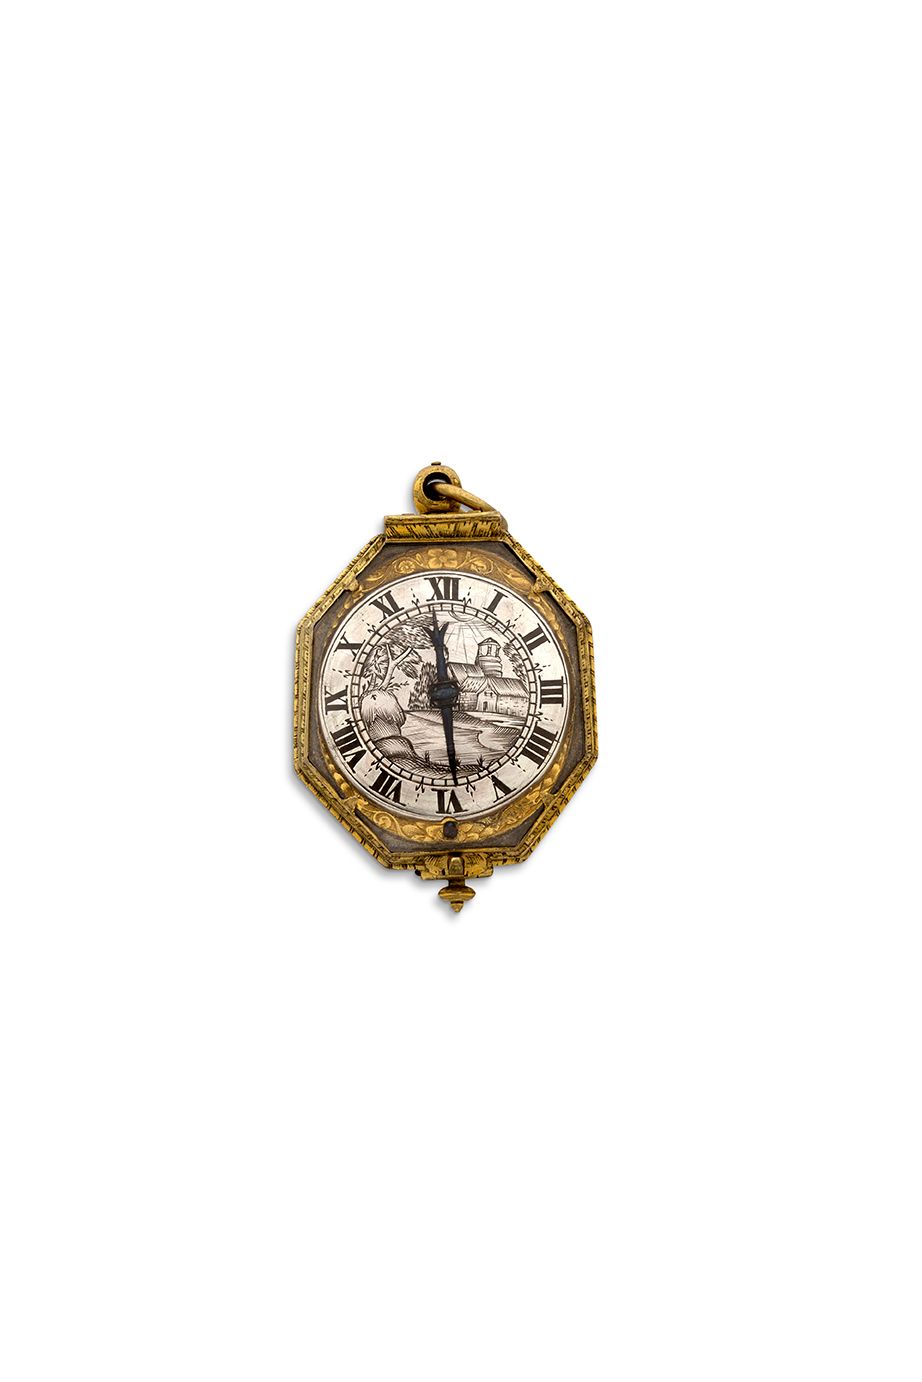 E STIENNE HUBERT, Rouen 
Achteckige Uhr aus vergoldetem Metall und Bergkristall &hellip;